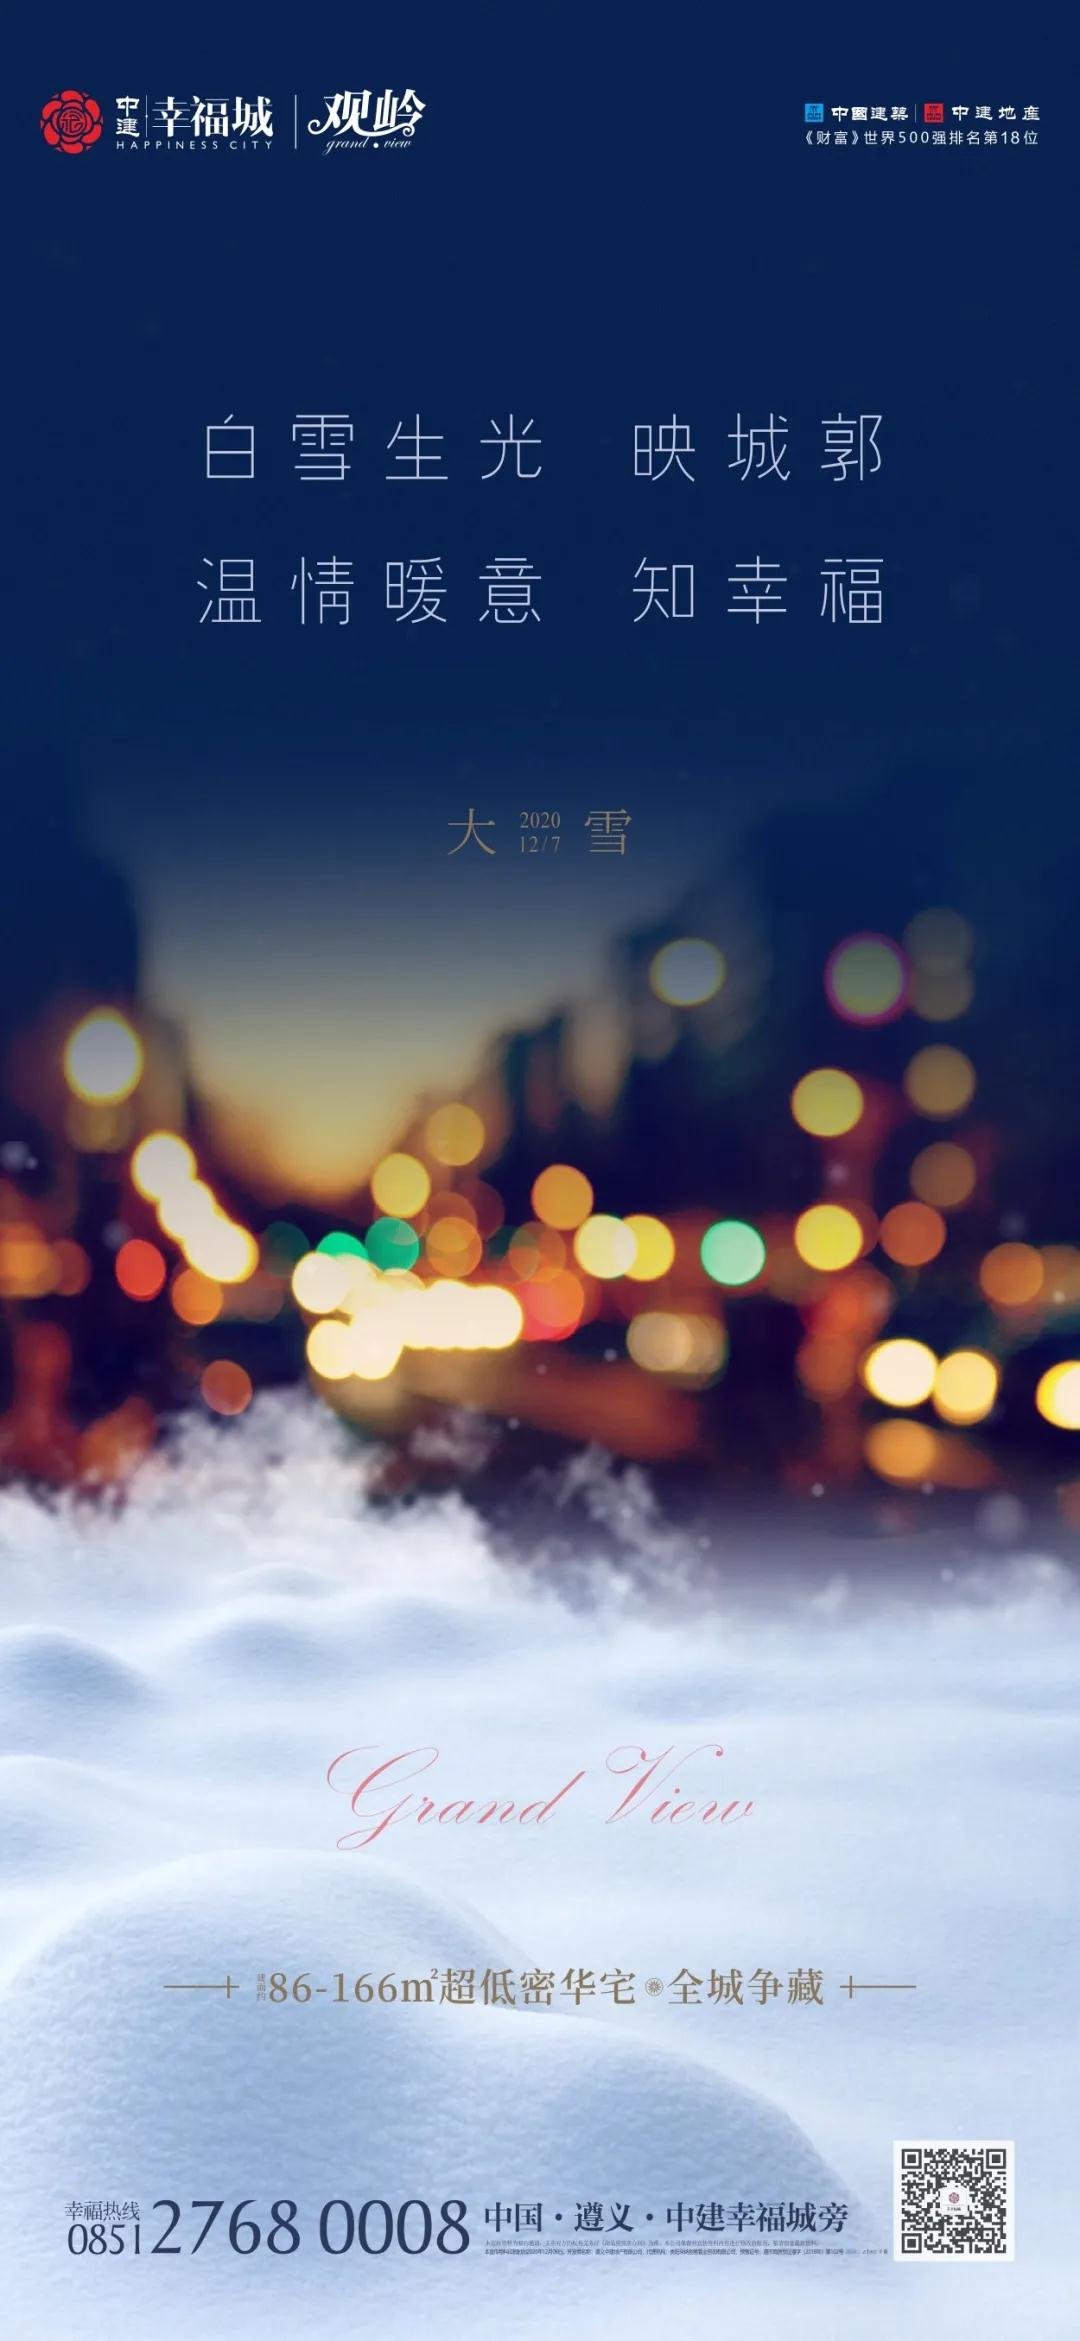 【大雪】白雪生光映城郭，温情暖意知幸福